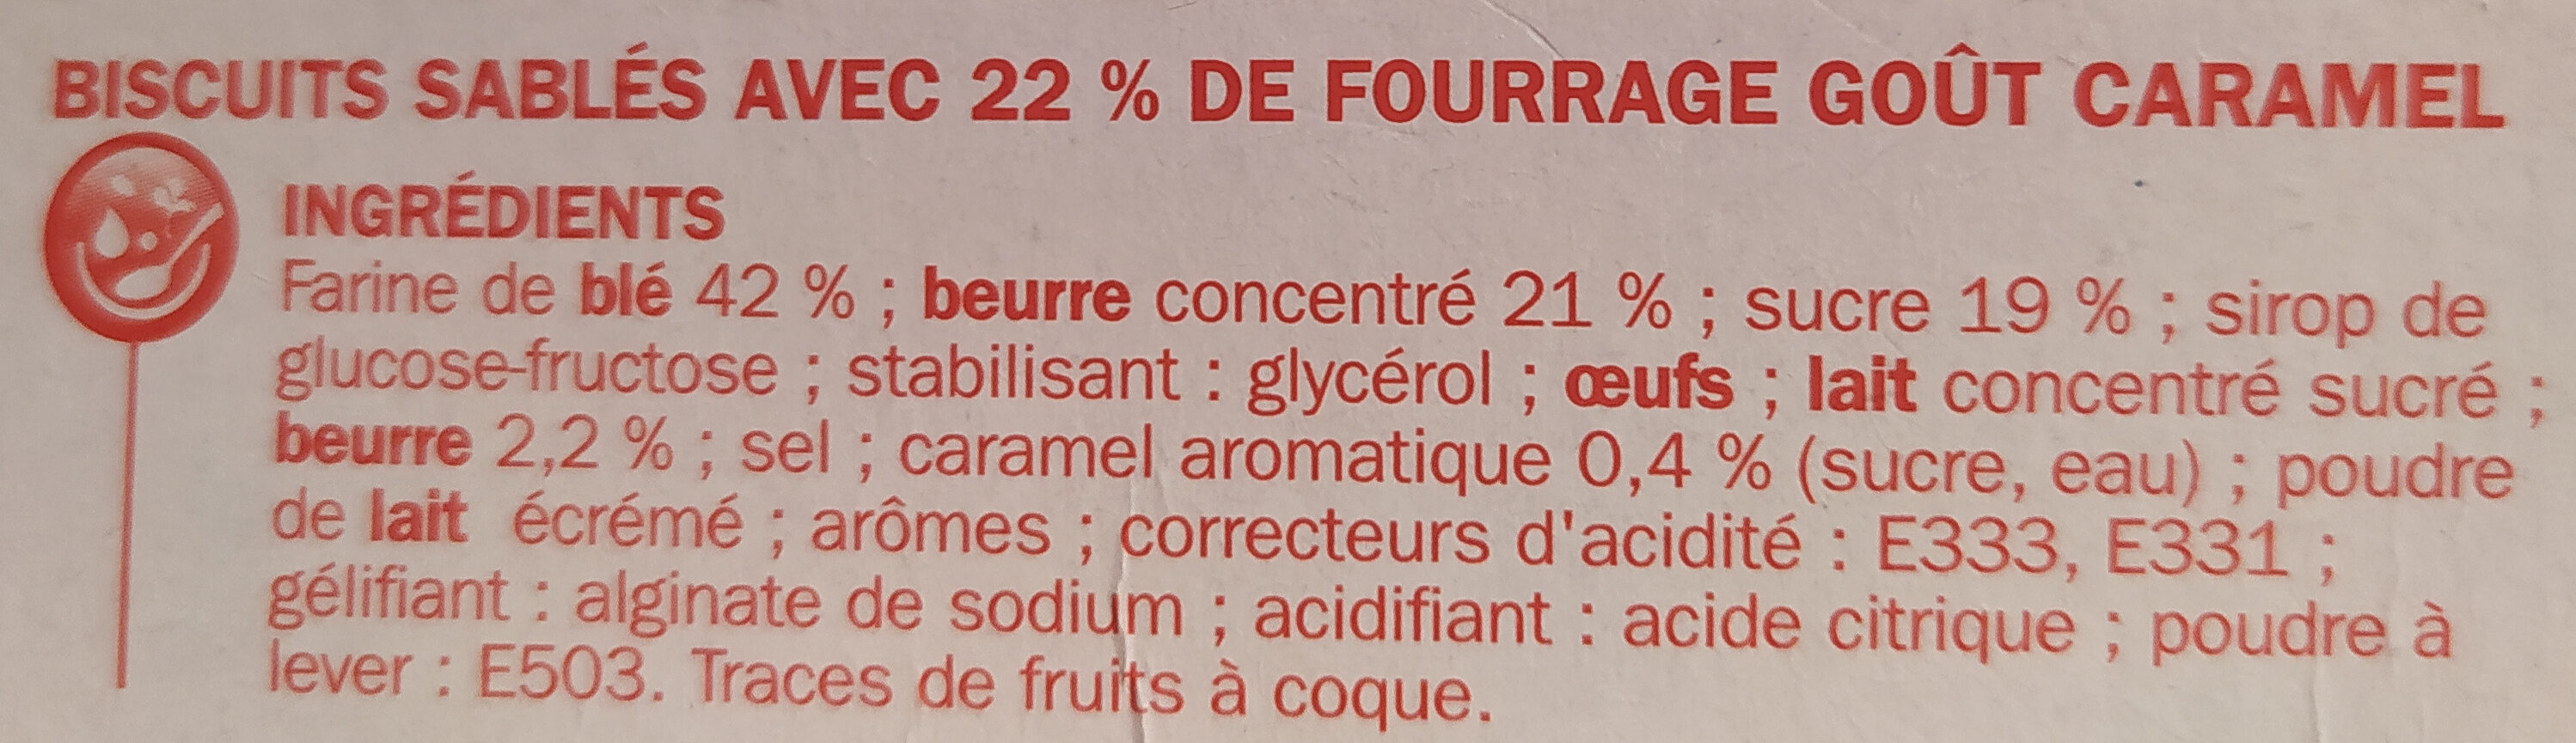 P'tit Déli, Sablés pur beurre caramel - Ingredienser - fr